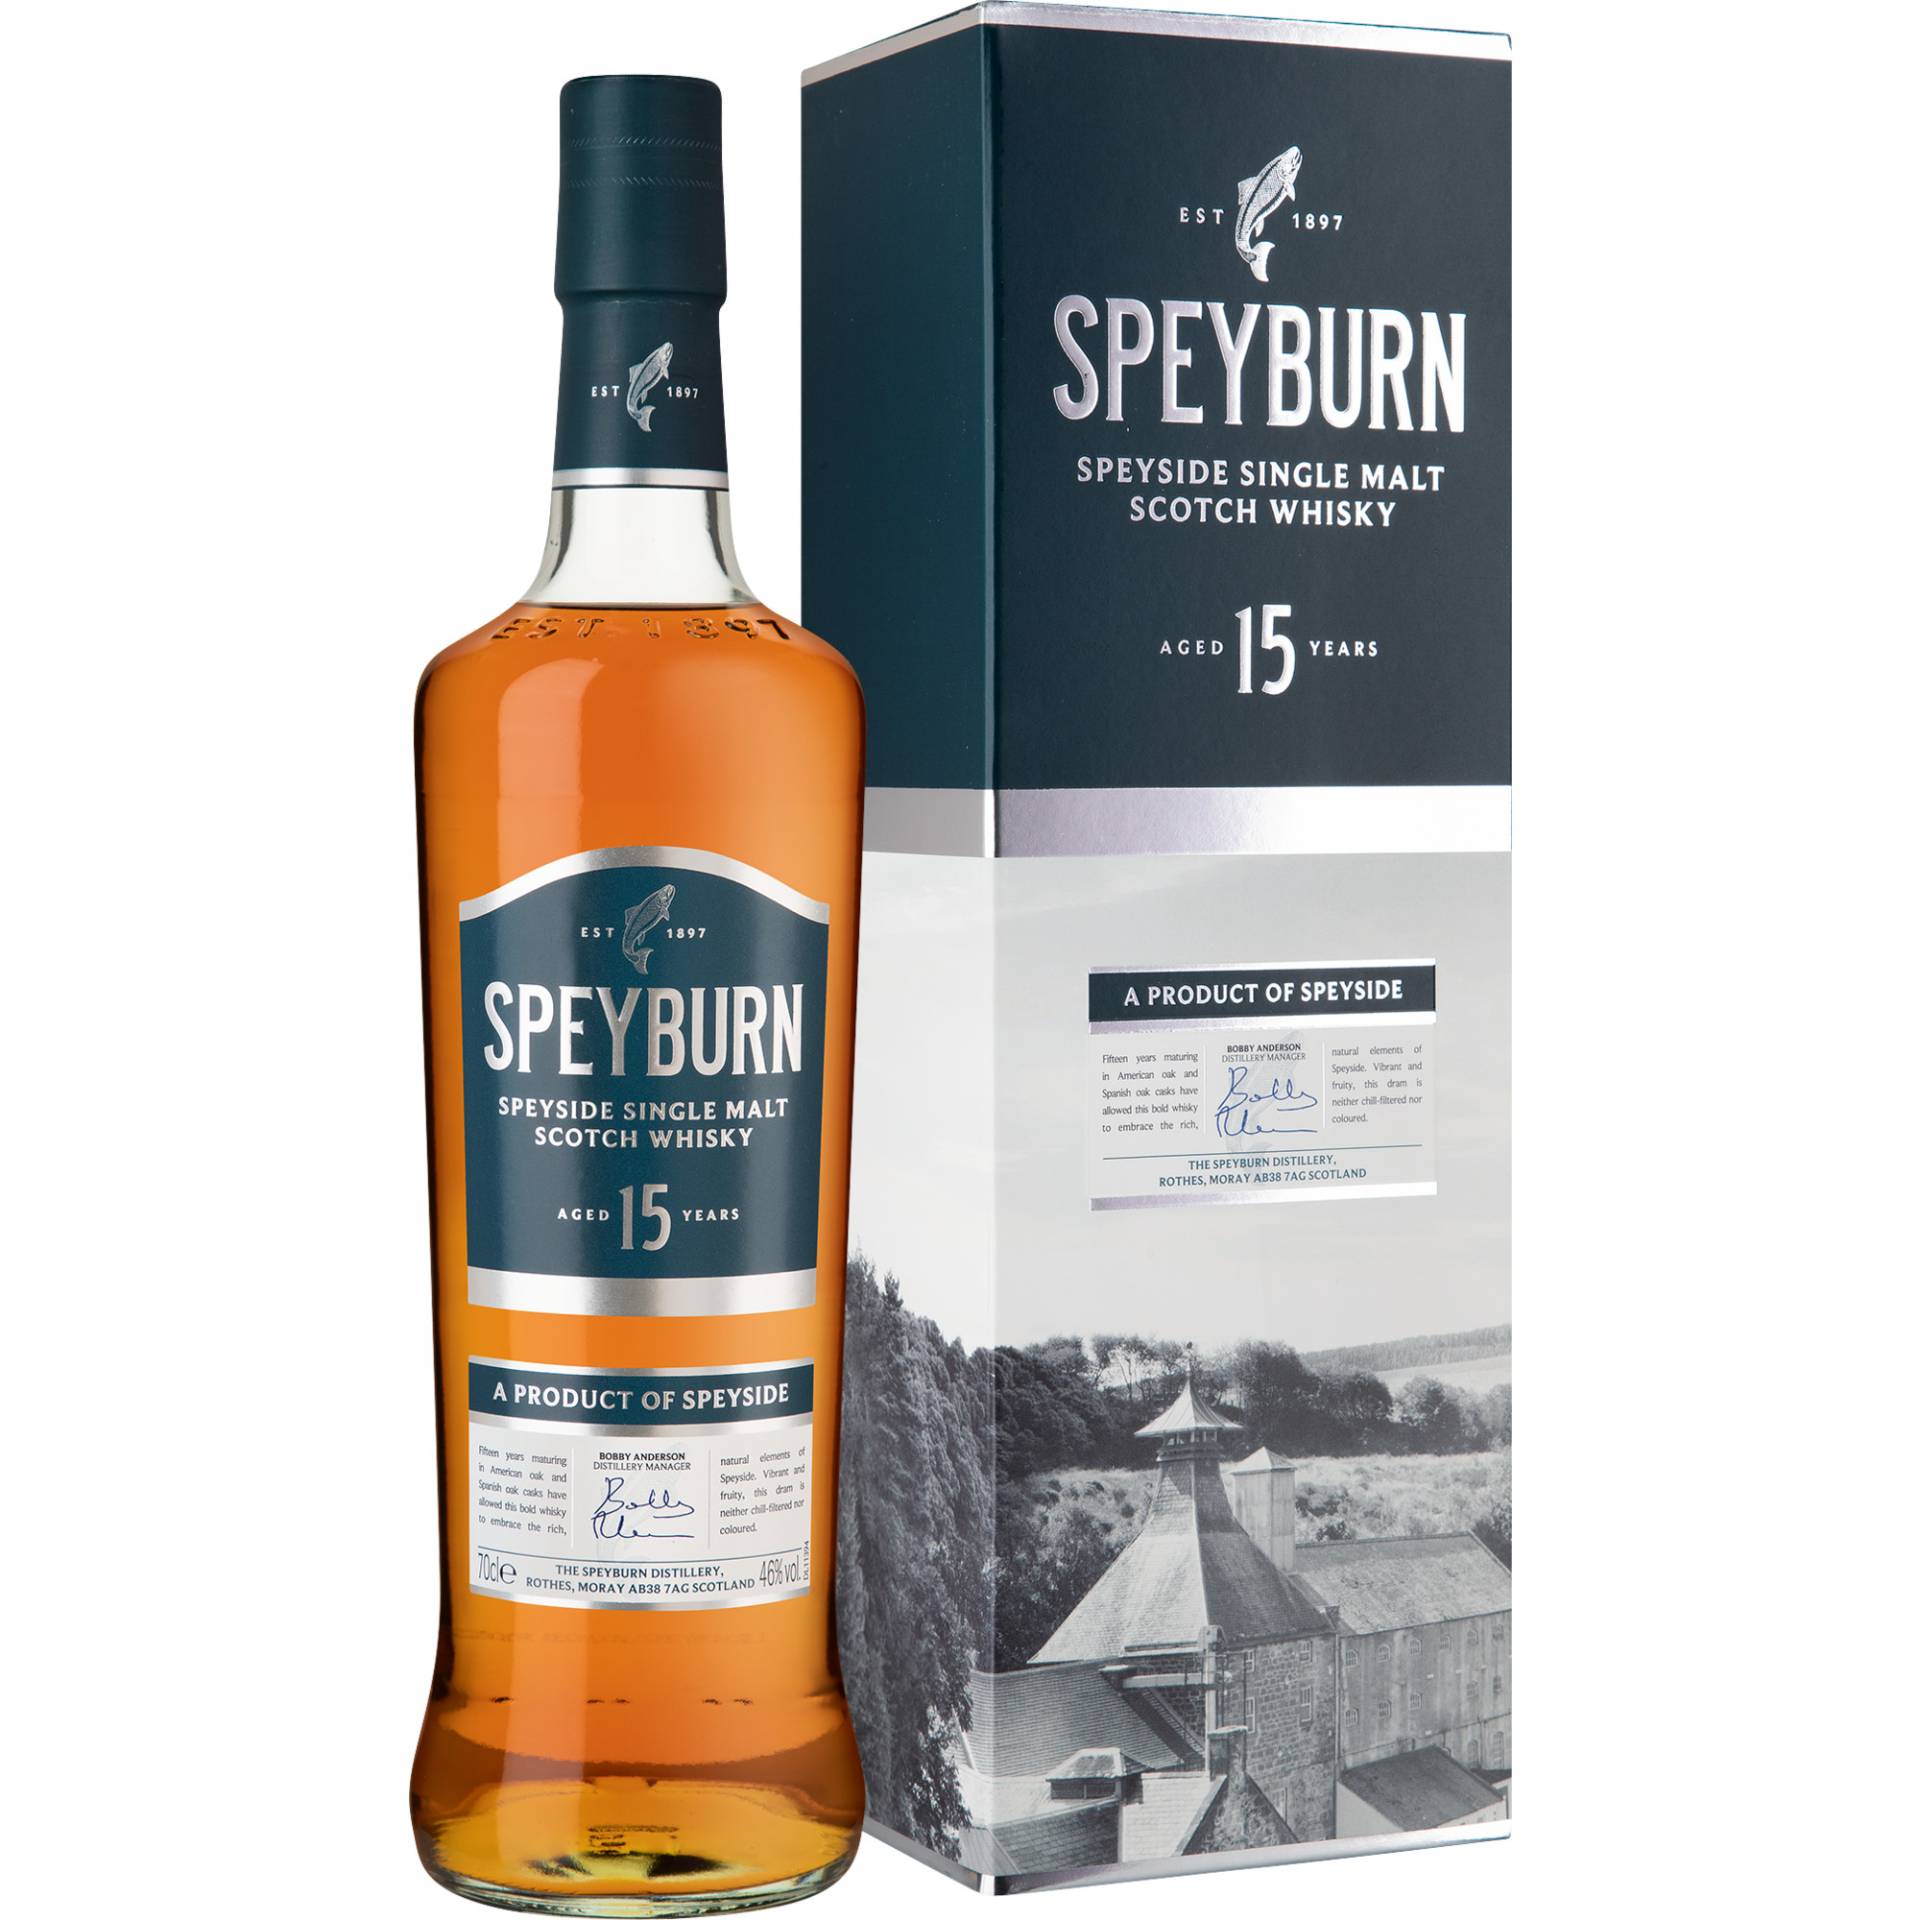 Speyburn 15 Years Single Malt Scotch Whisky, 0,7 L, 46% Vol., in Gepa, Schottland, Spirituosen von Inver House Distillers , Roughrigg Rd , ML6 8QL Airdrie, Great Britain